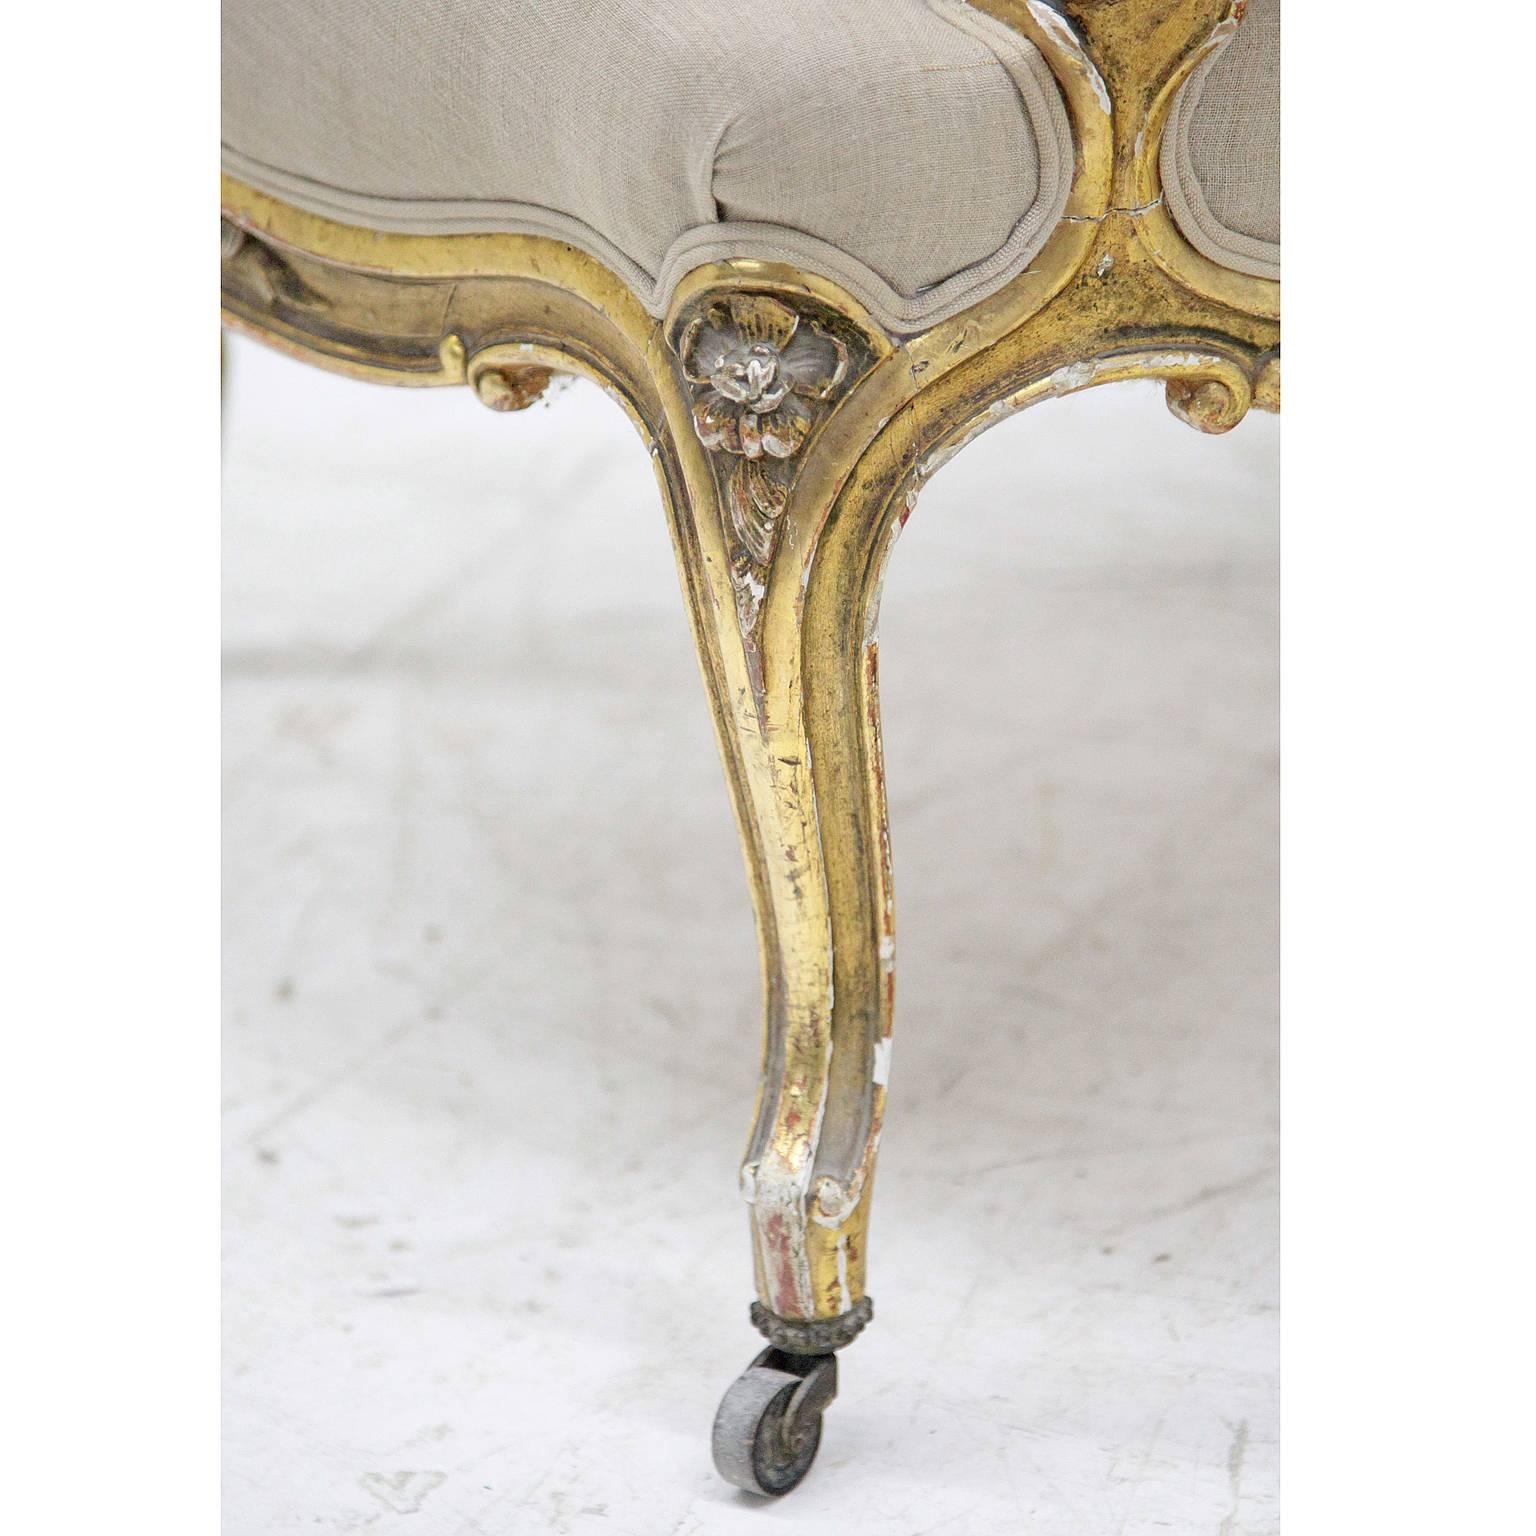 Un fauteuil Napoléon III sur des pieds en forme de S avec un cadre incurvé. Le dossier haut et arrondi ainsi que l'assise et les accoudoirs sont rembourrés. Le cadre patiné doré est décoré d'éléments floraux sculptés.